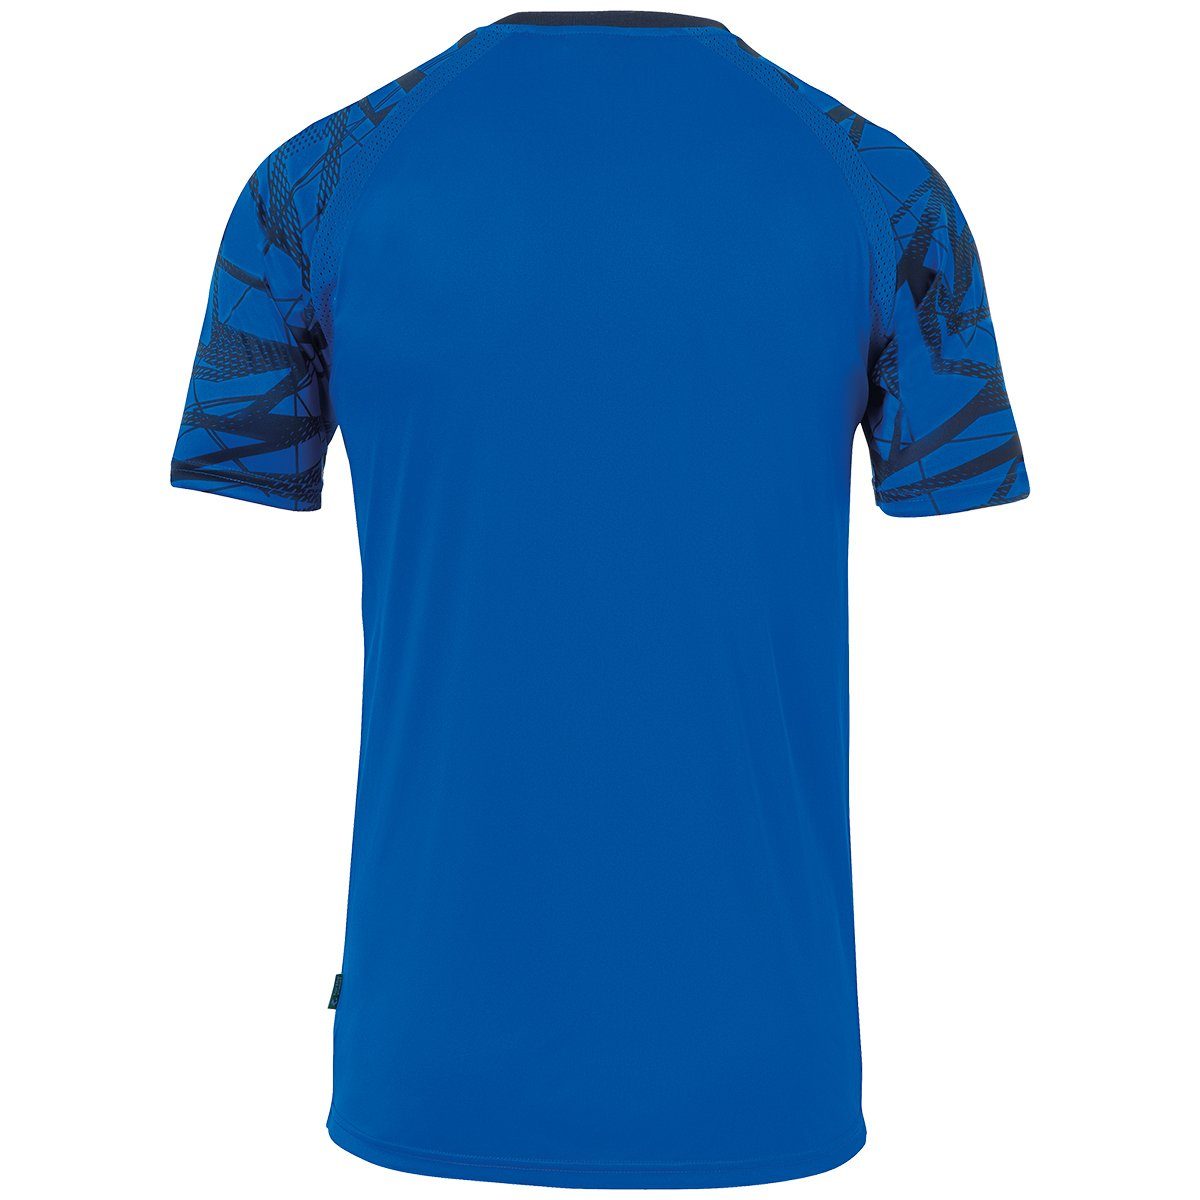 azurblau/marine Trainingsshirt KURZARM atmungsaktiv uhlsport 25 uhlsport Trainings-T-Shirt TRIKOT GOAL